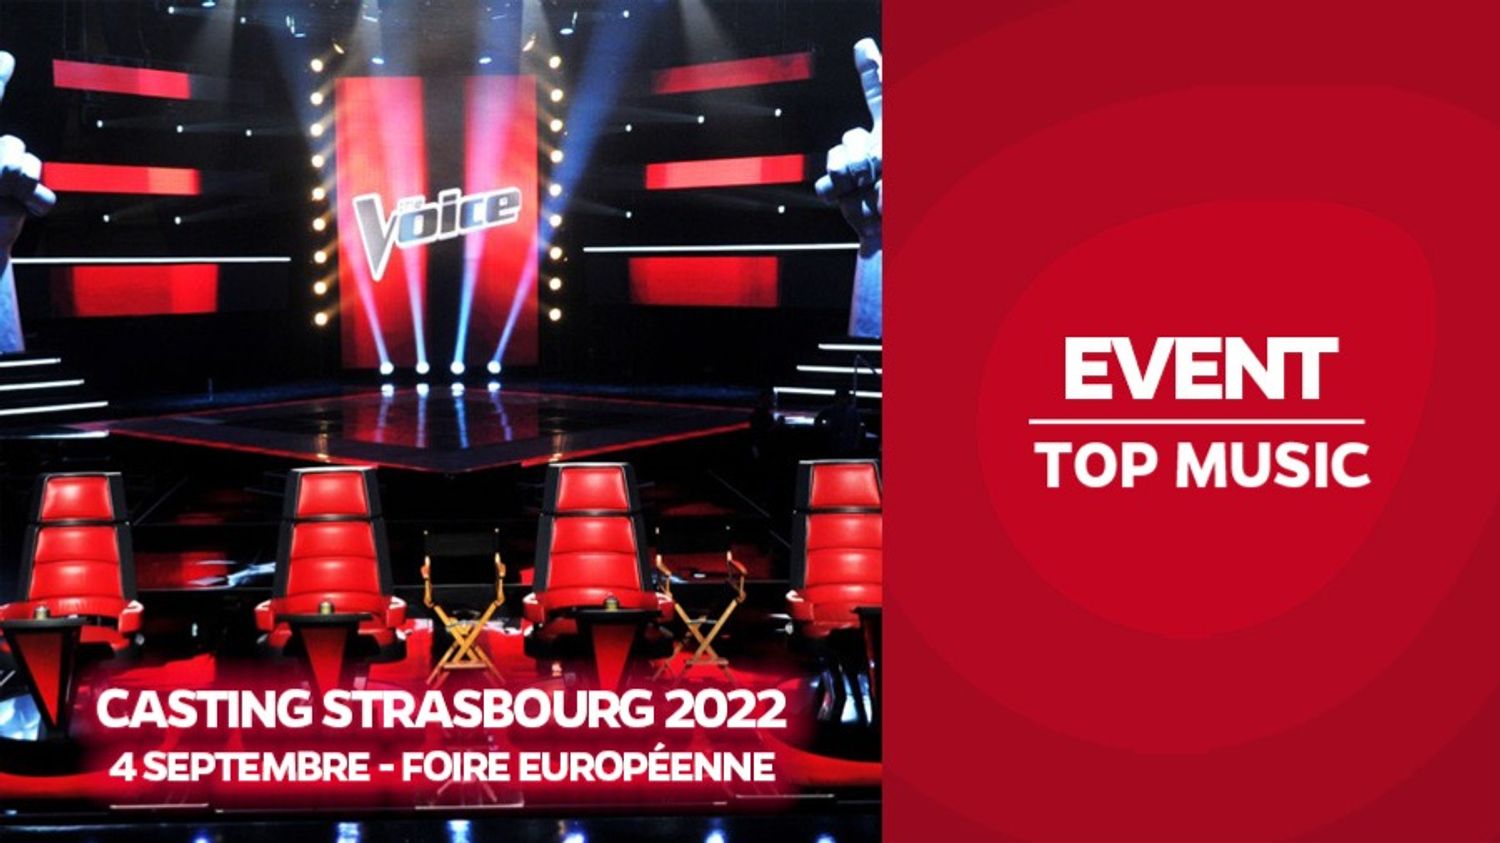 Participez au prochain casting de The Voice à Strasbourg